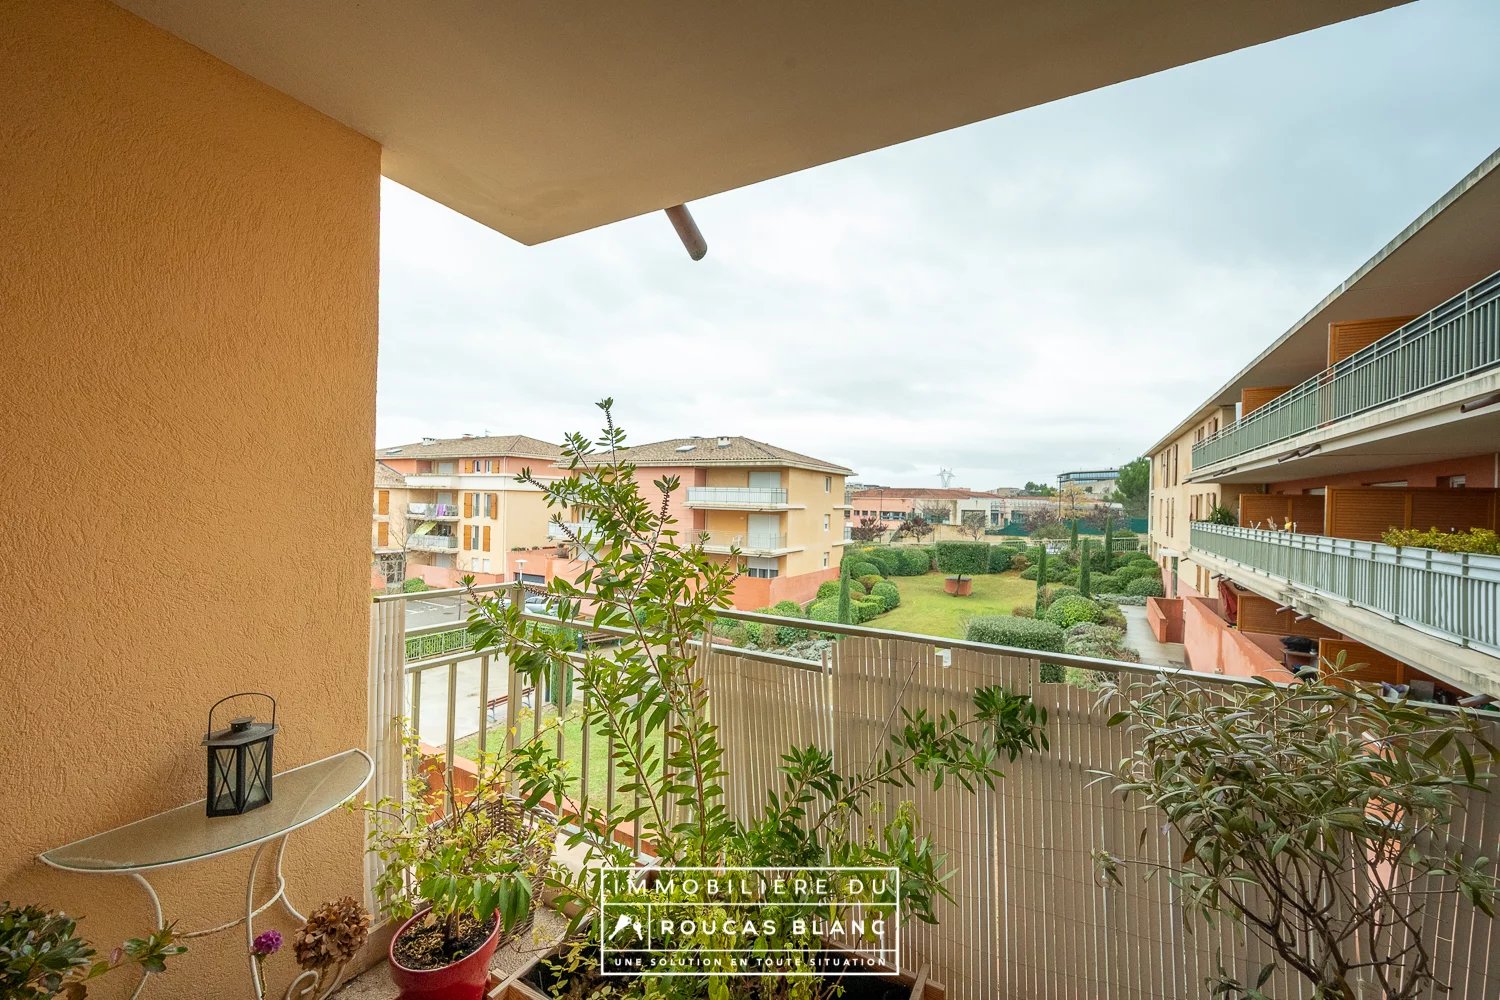 Appartement 2 pièces 45m2 avec terrasse 11m2 - Aix-en-Provence